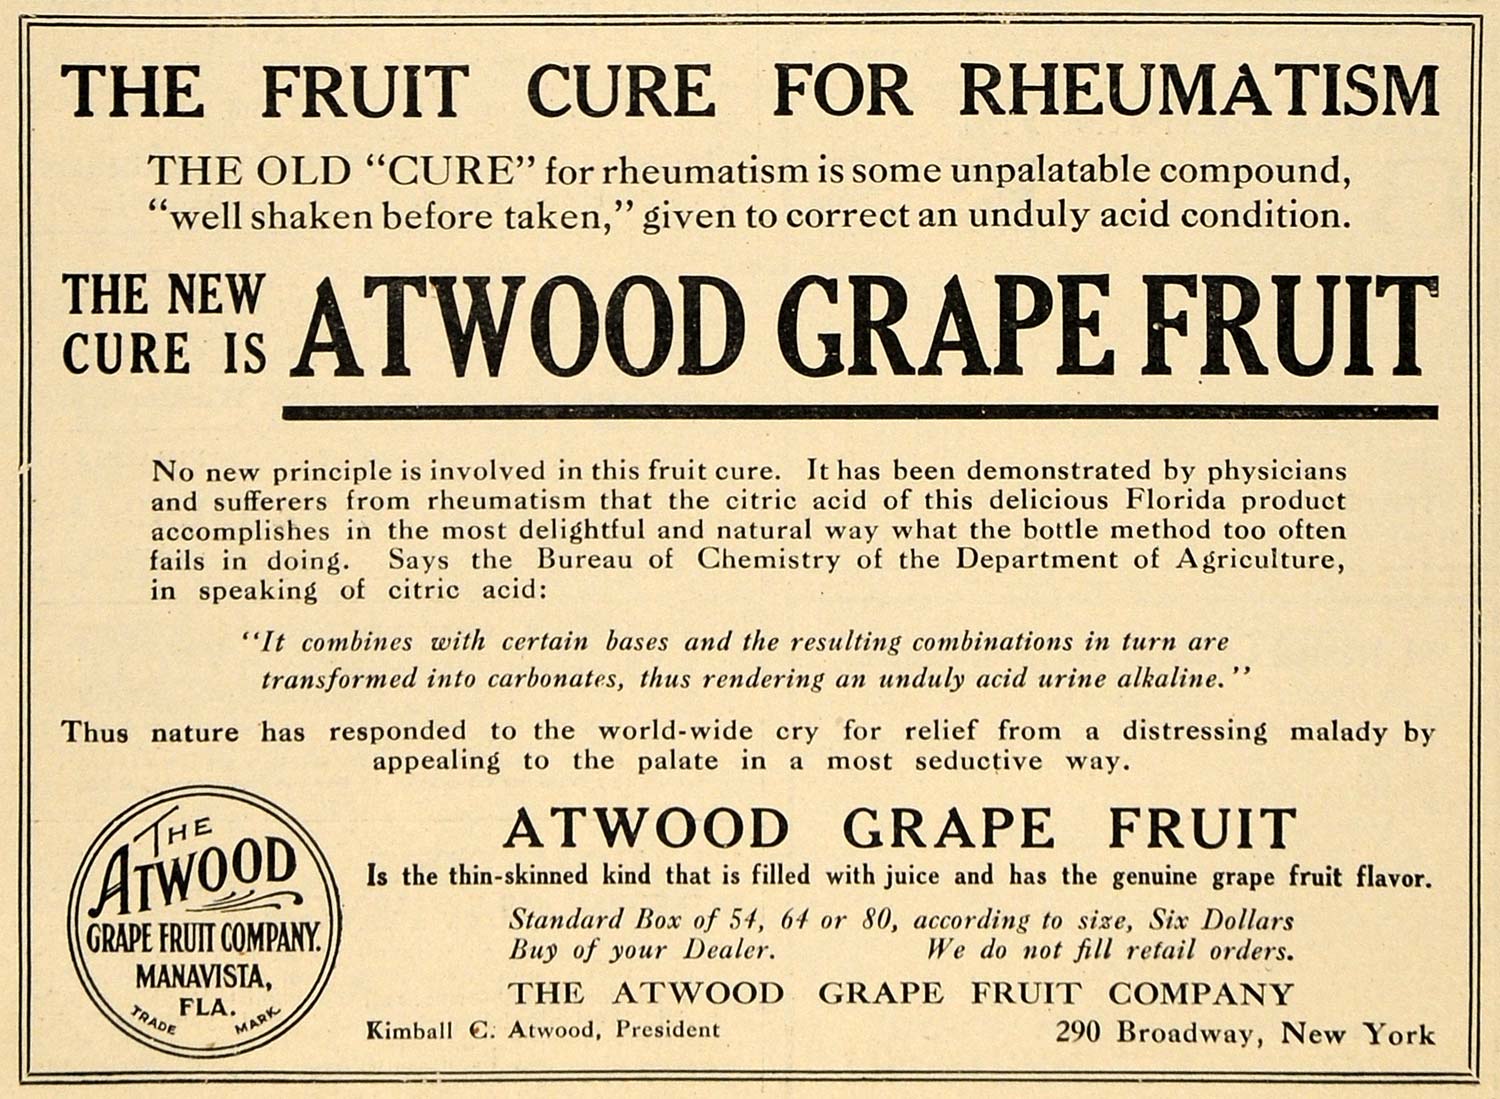 1910 Ad Atwood Grape Fruit Co Florida Product Manavista - ORIGINAL TIN4